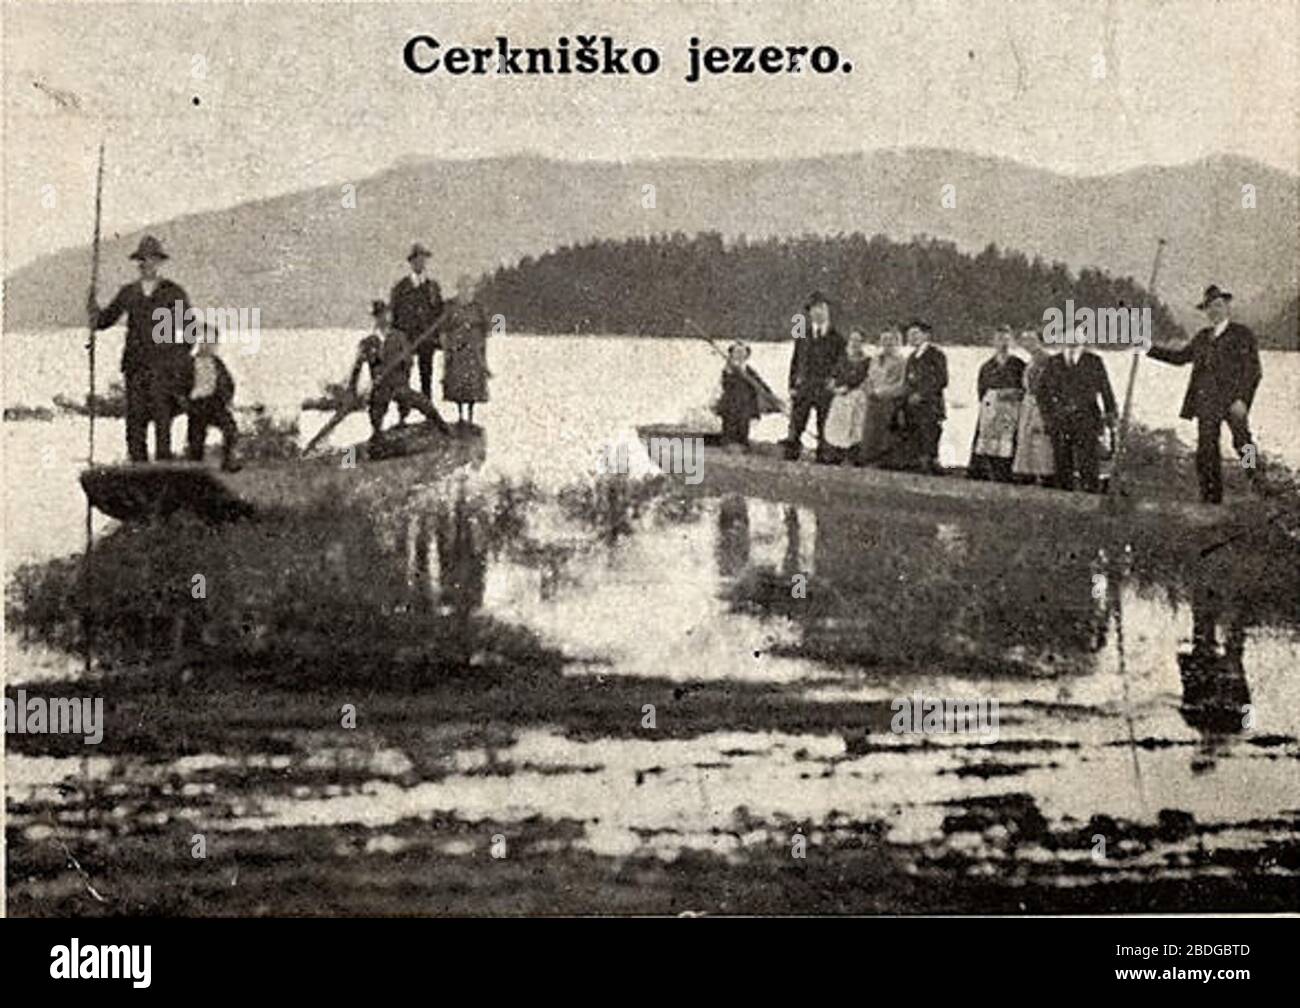 Slovenščina: Razglednica Cerkniškega jezera.; 1930;  http://stareslike.cerknica.org/2010/04/18/1930-jezero-dvojna-razglednica/;  Unknown author Stock Photo - Alamy